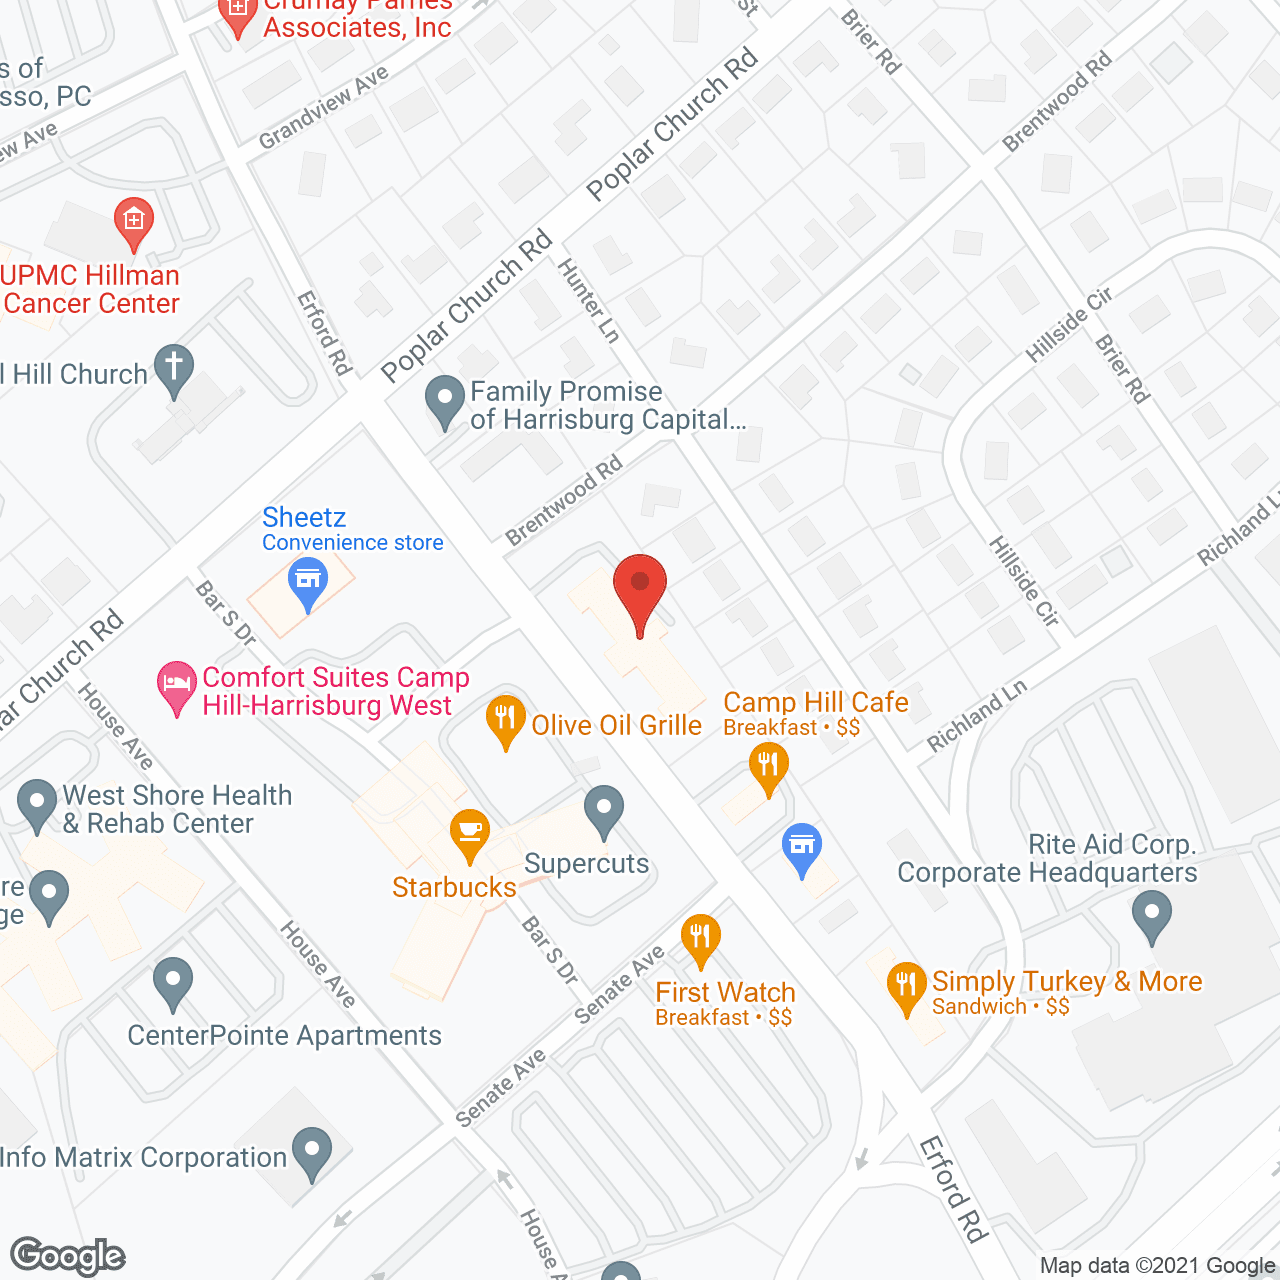 Golden LivingCenter - Camp Hill in google map